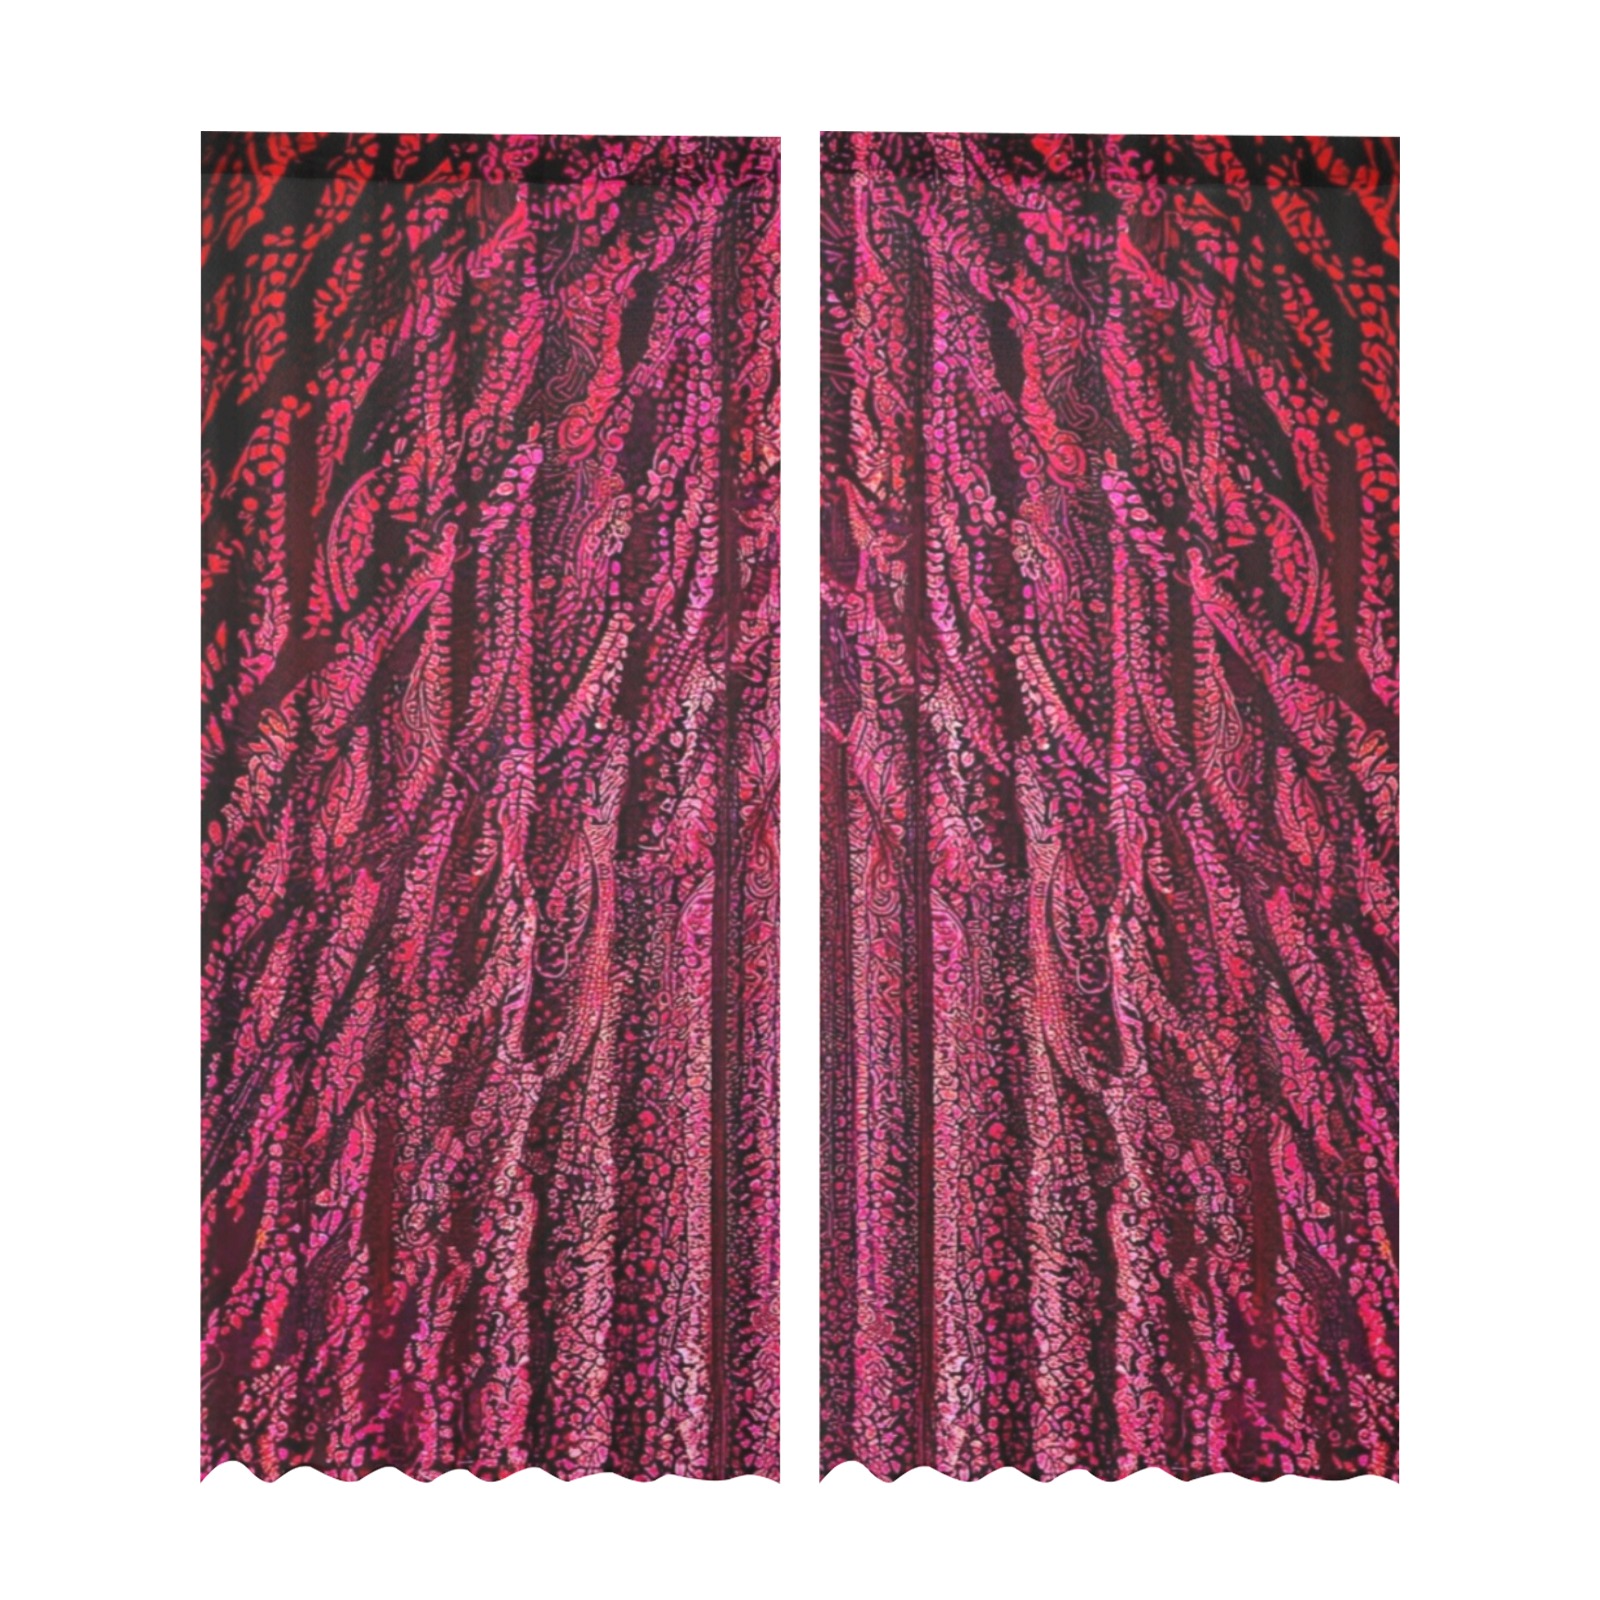 burgundy striped Gauze Curtain 28"x95" (Two-Piece)